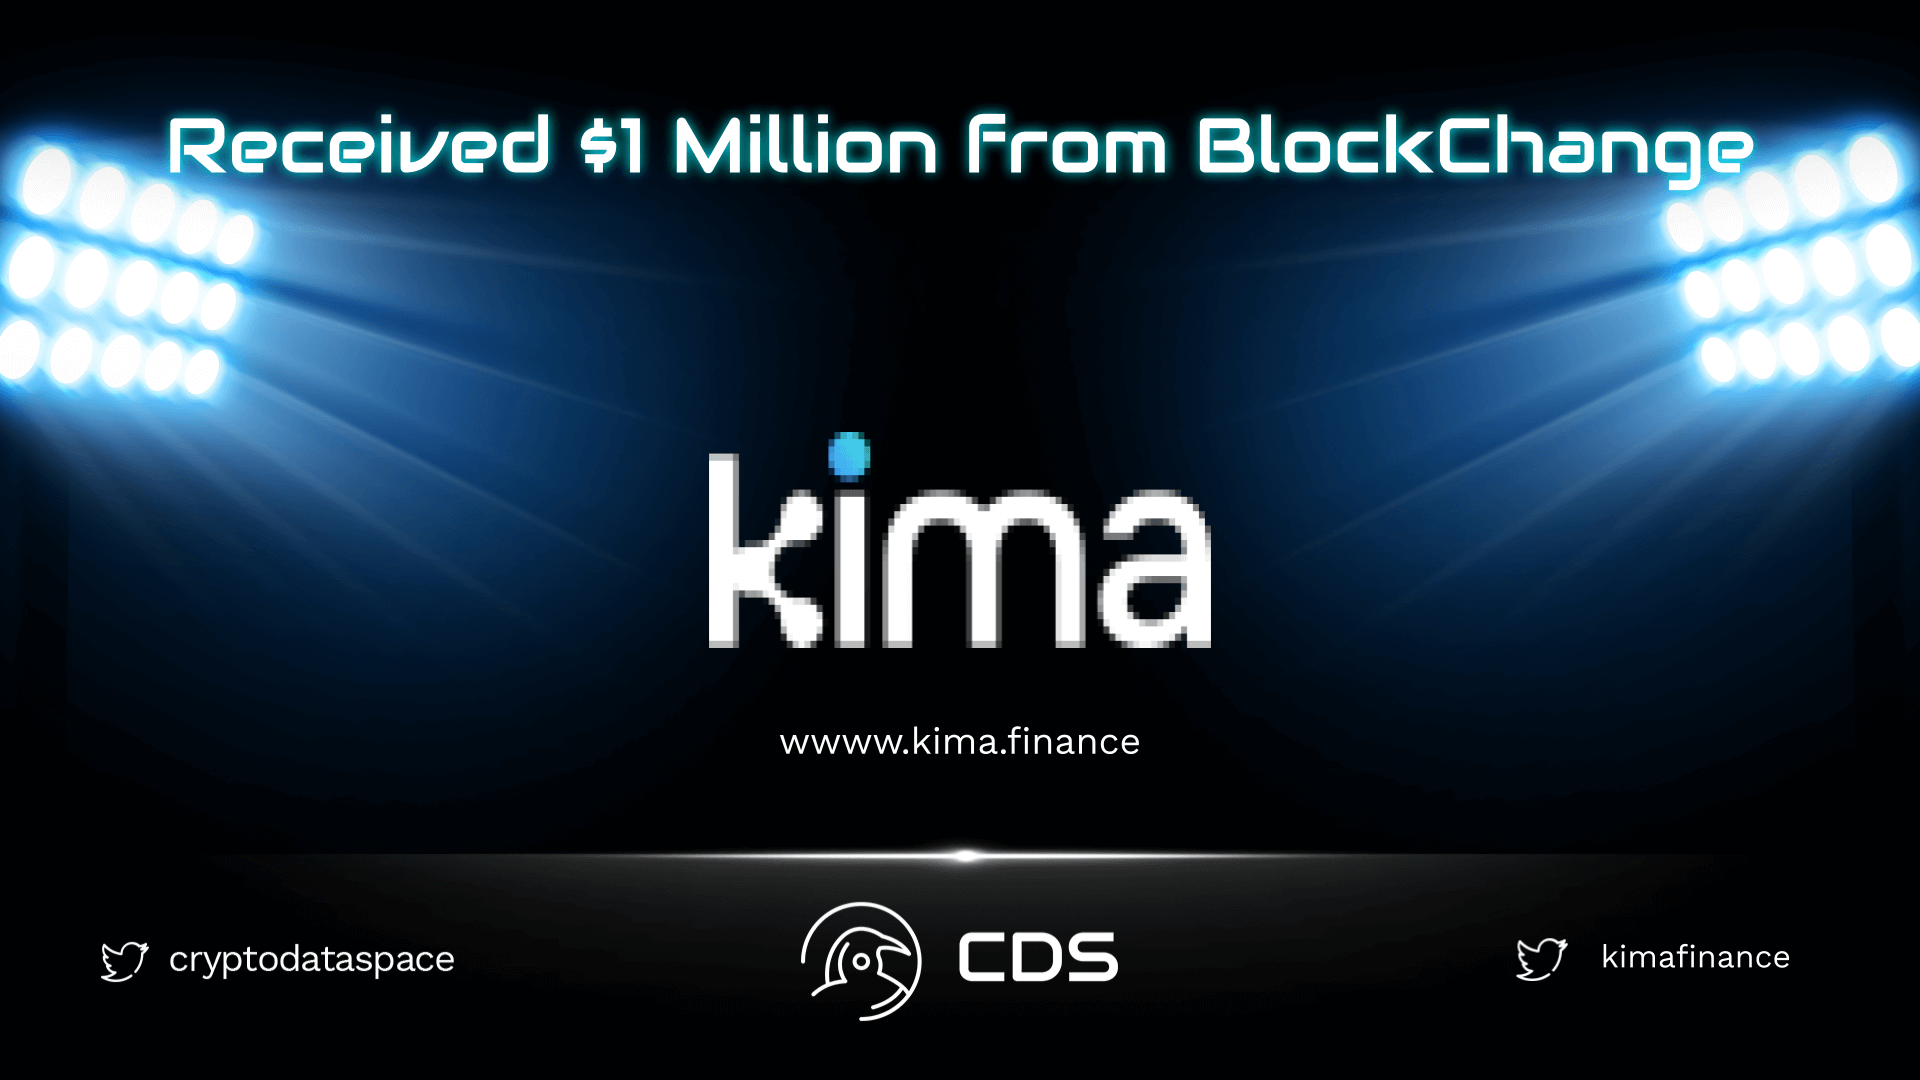 kima $1 million received